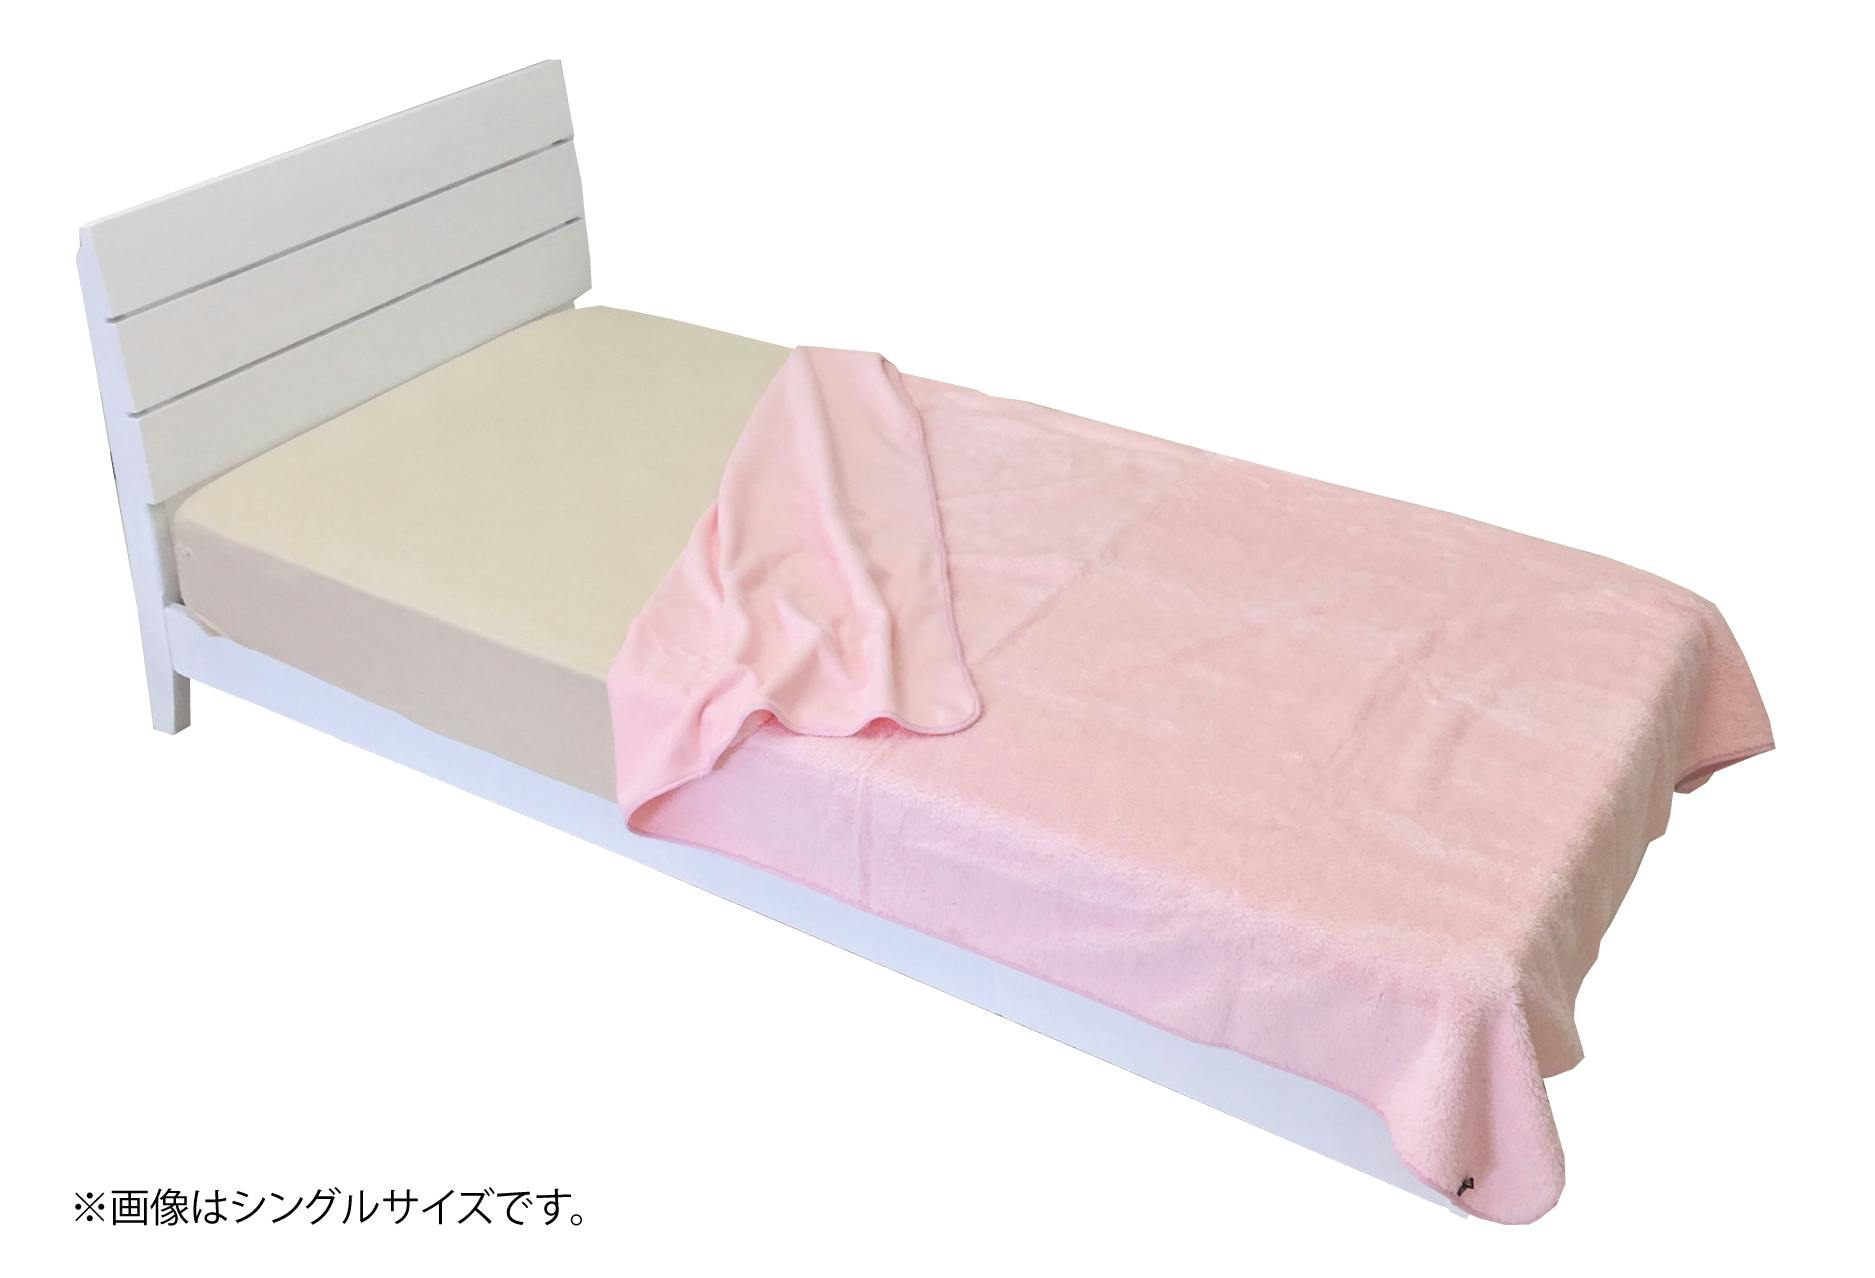 オーシン エバーウォーム 吸湿発熱 毛布 シングル 140×200cm ピンク